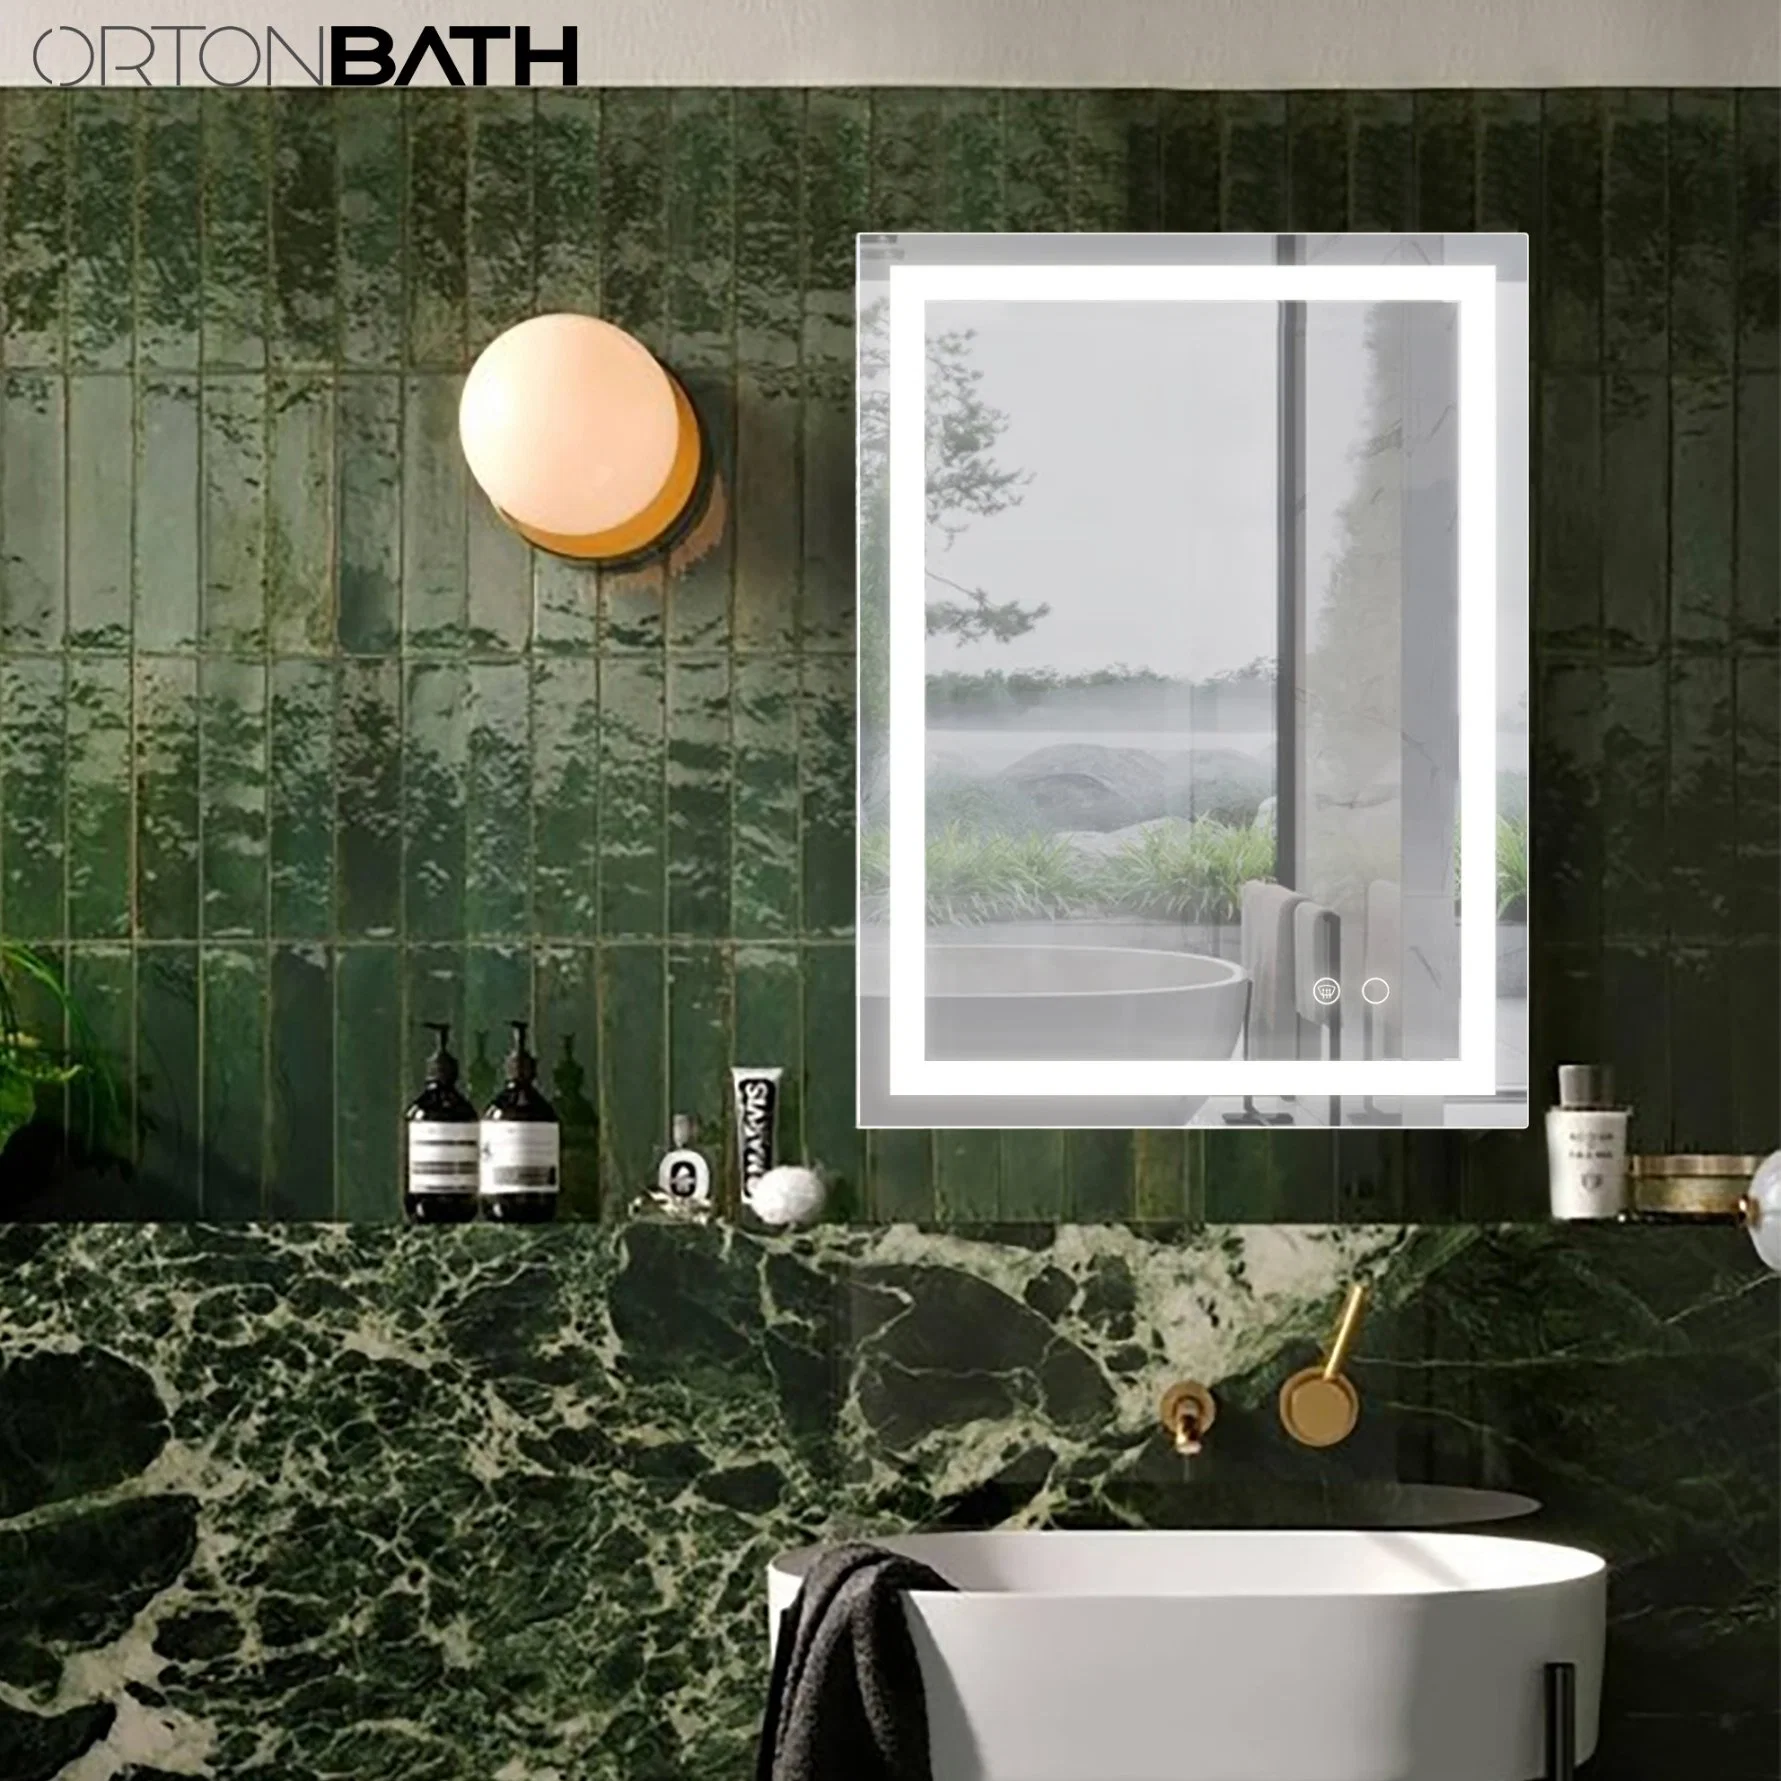 Зеркало для ванной комнаты Ortonbath 24X32 со светодиодной подсветкой и функцией запоминания настроек, затемнение Подсветка + подсветка спереди освещенное светленное зеркало для ванной комнаты